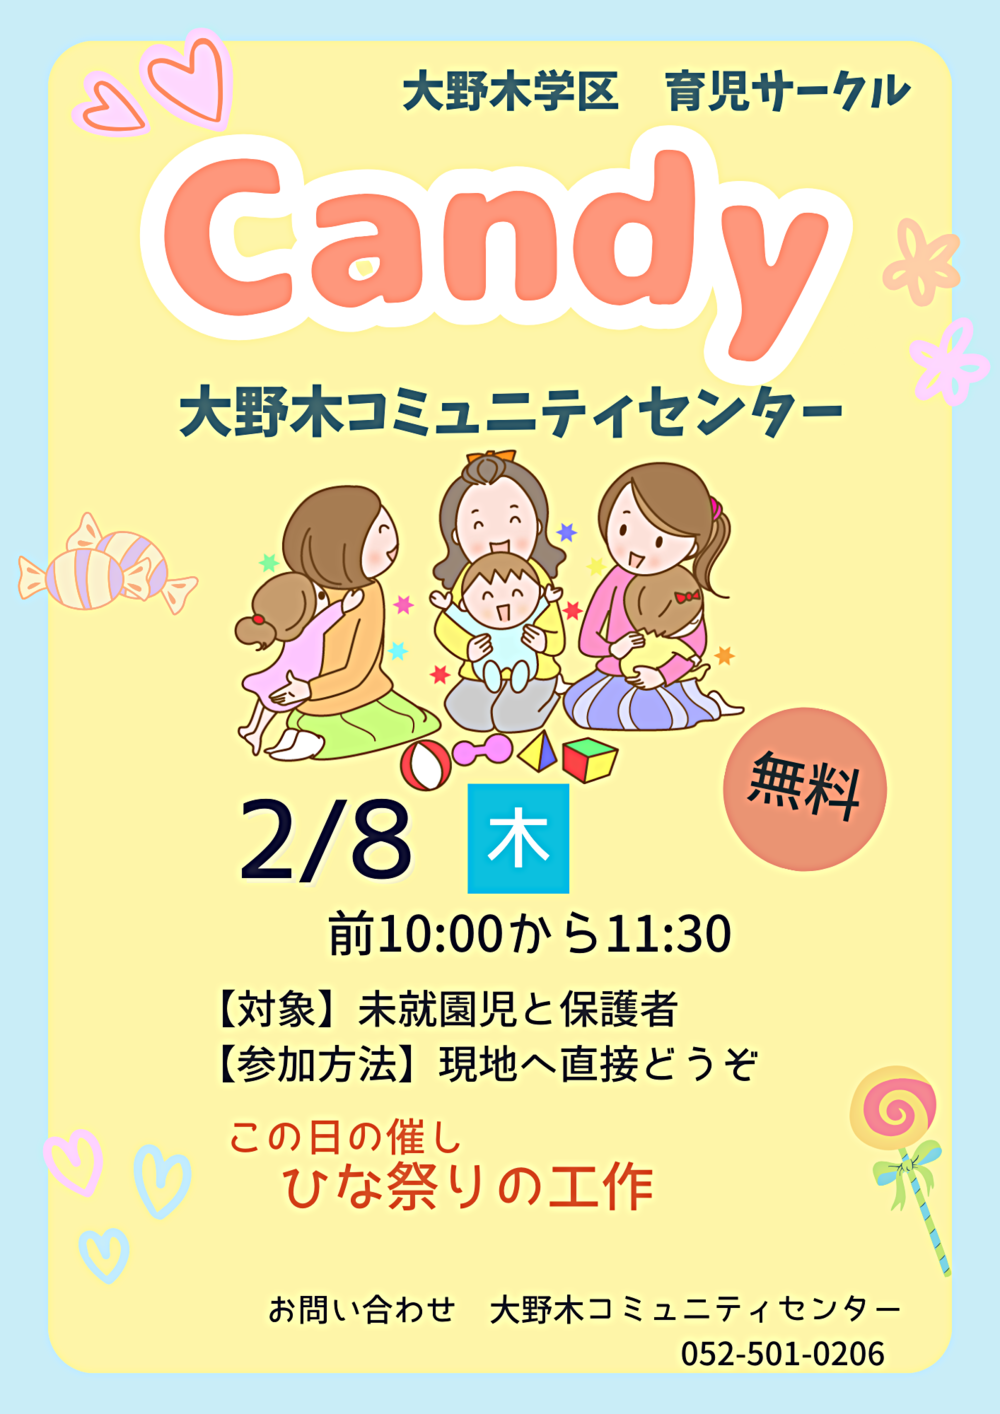 大野木学区育児サークル「Candy」